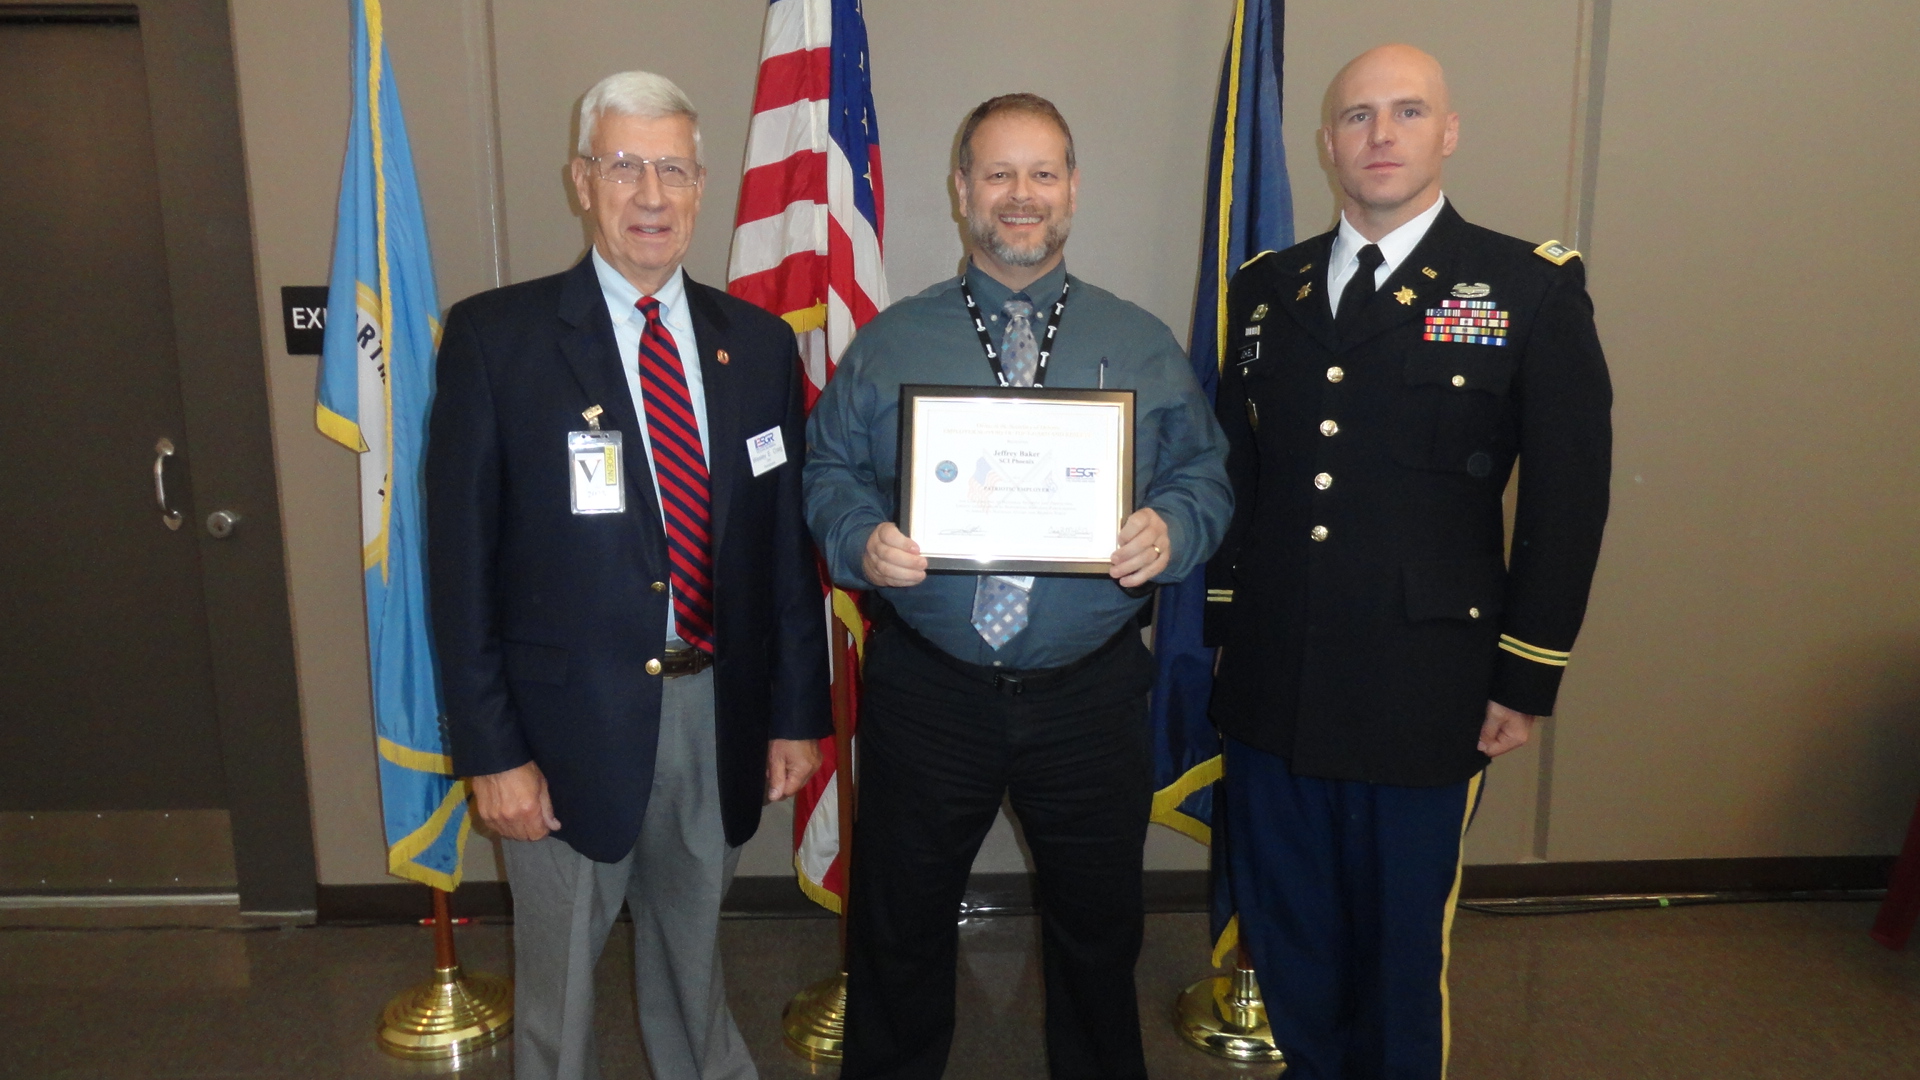 Unit Manager Jeffrey Baker receives an award